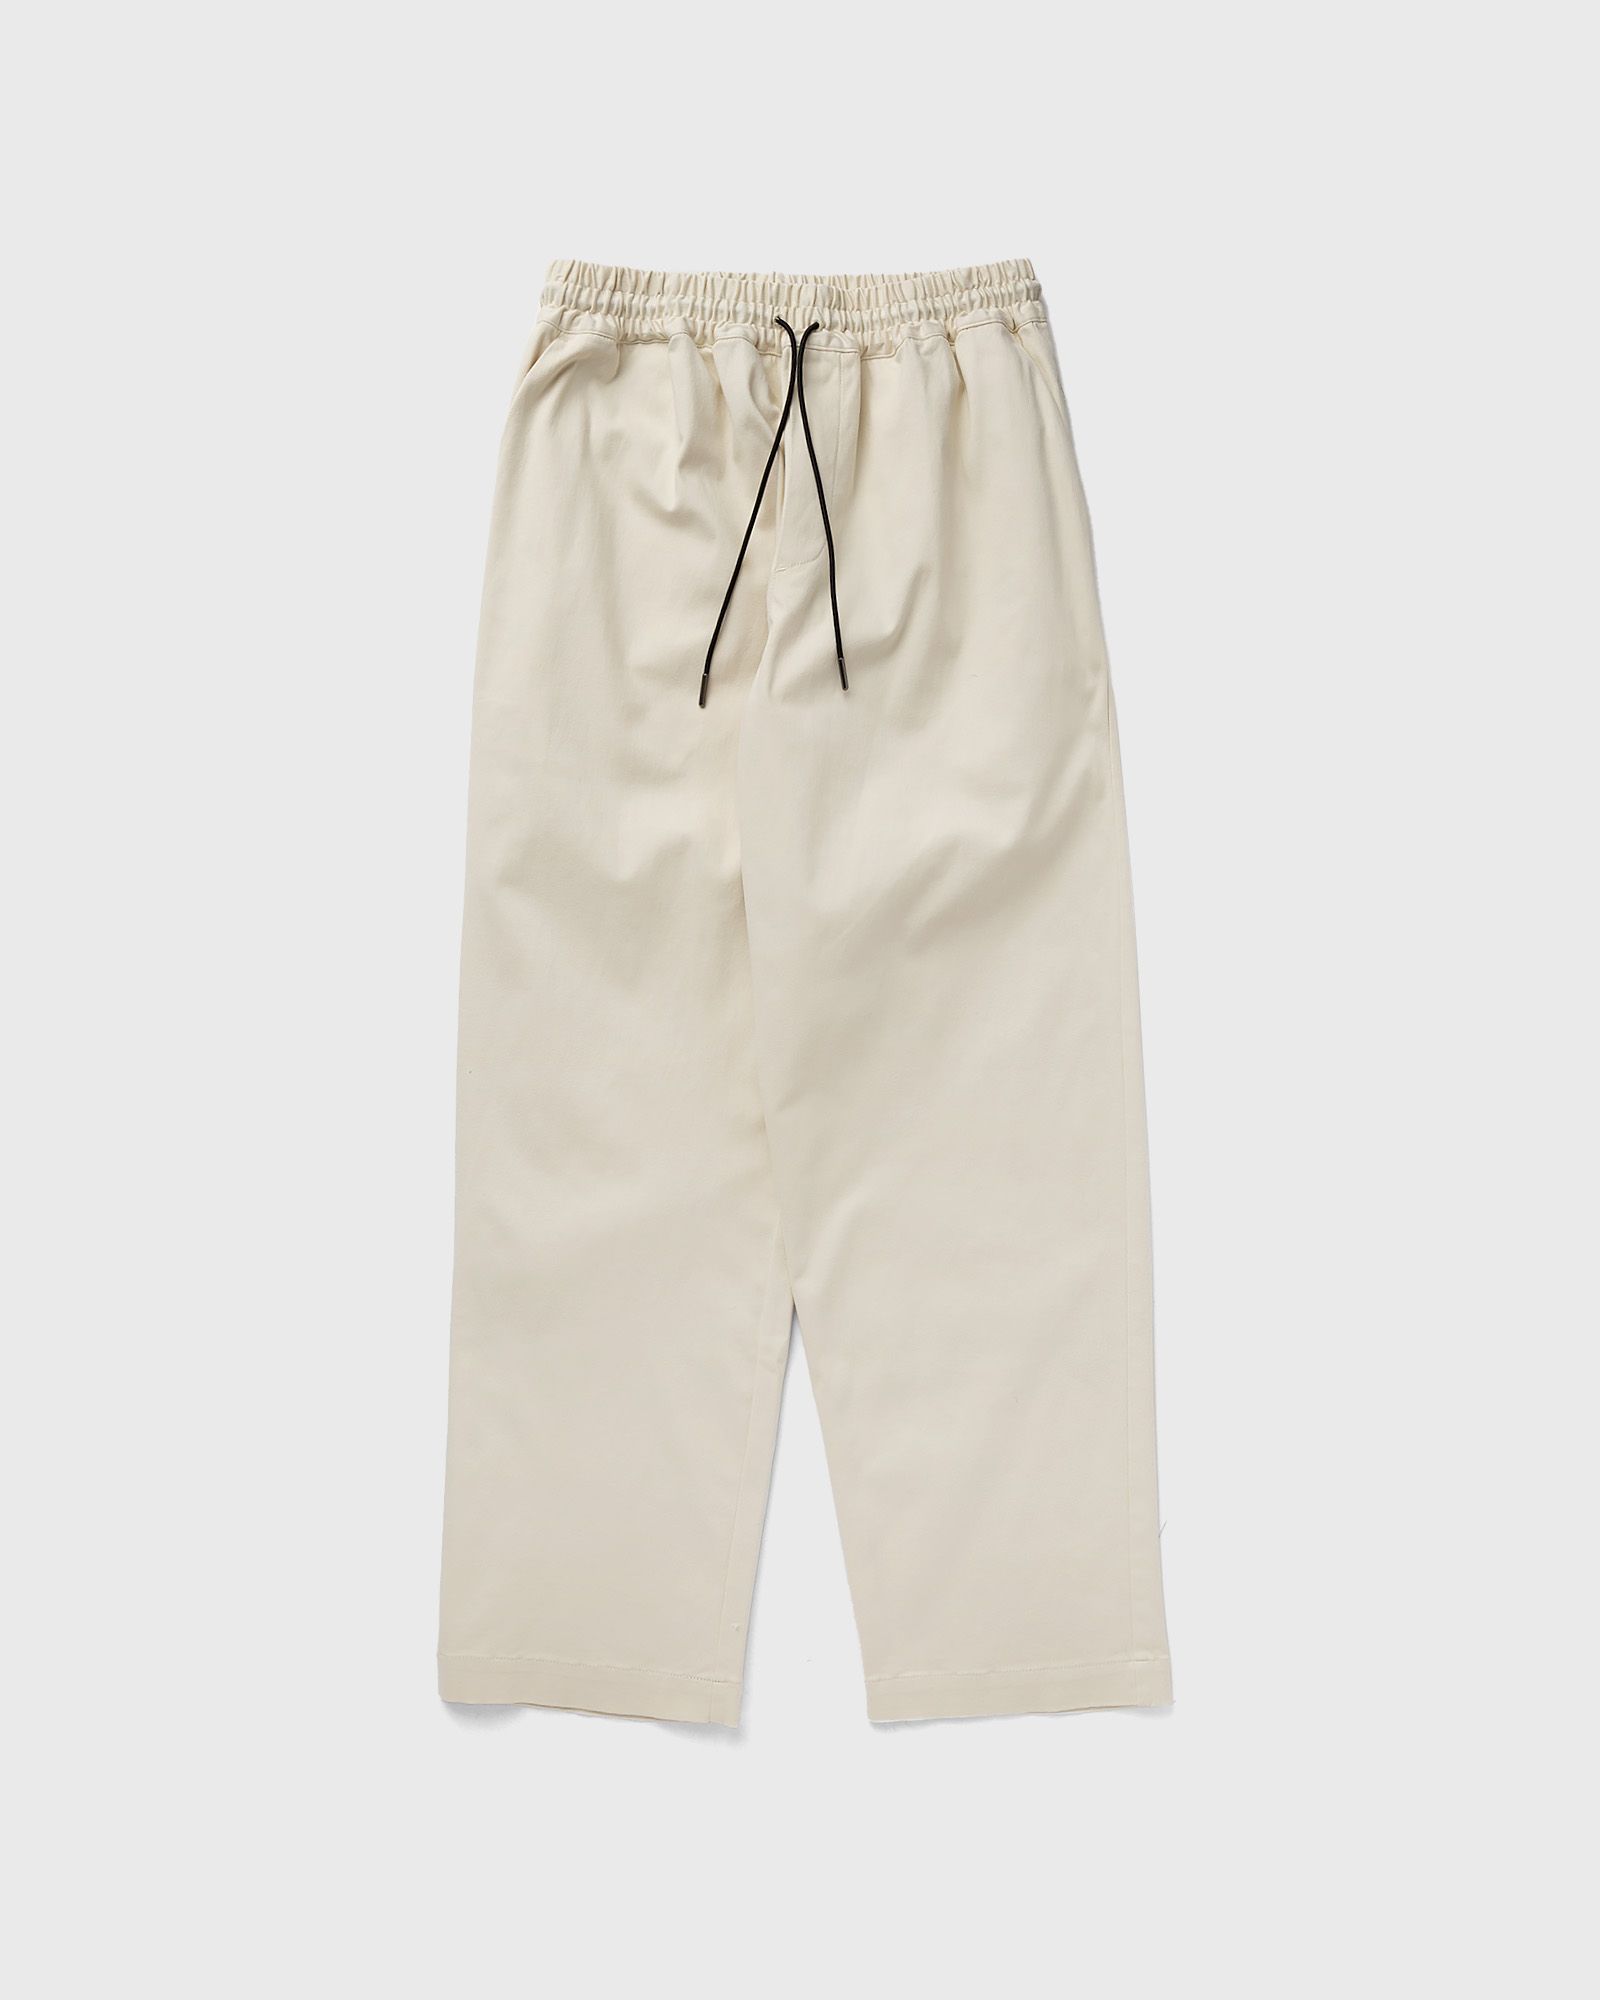 New Amsterdam - work pants men casual pants beige in größe:s